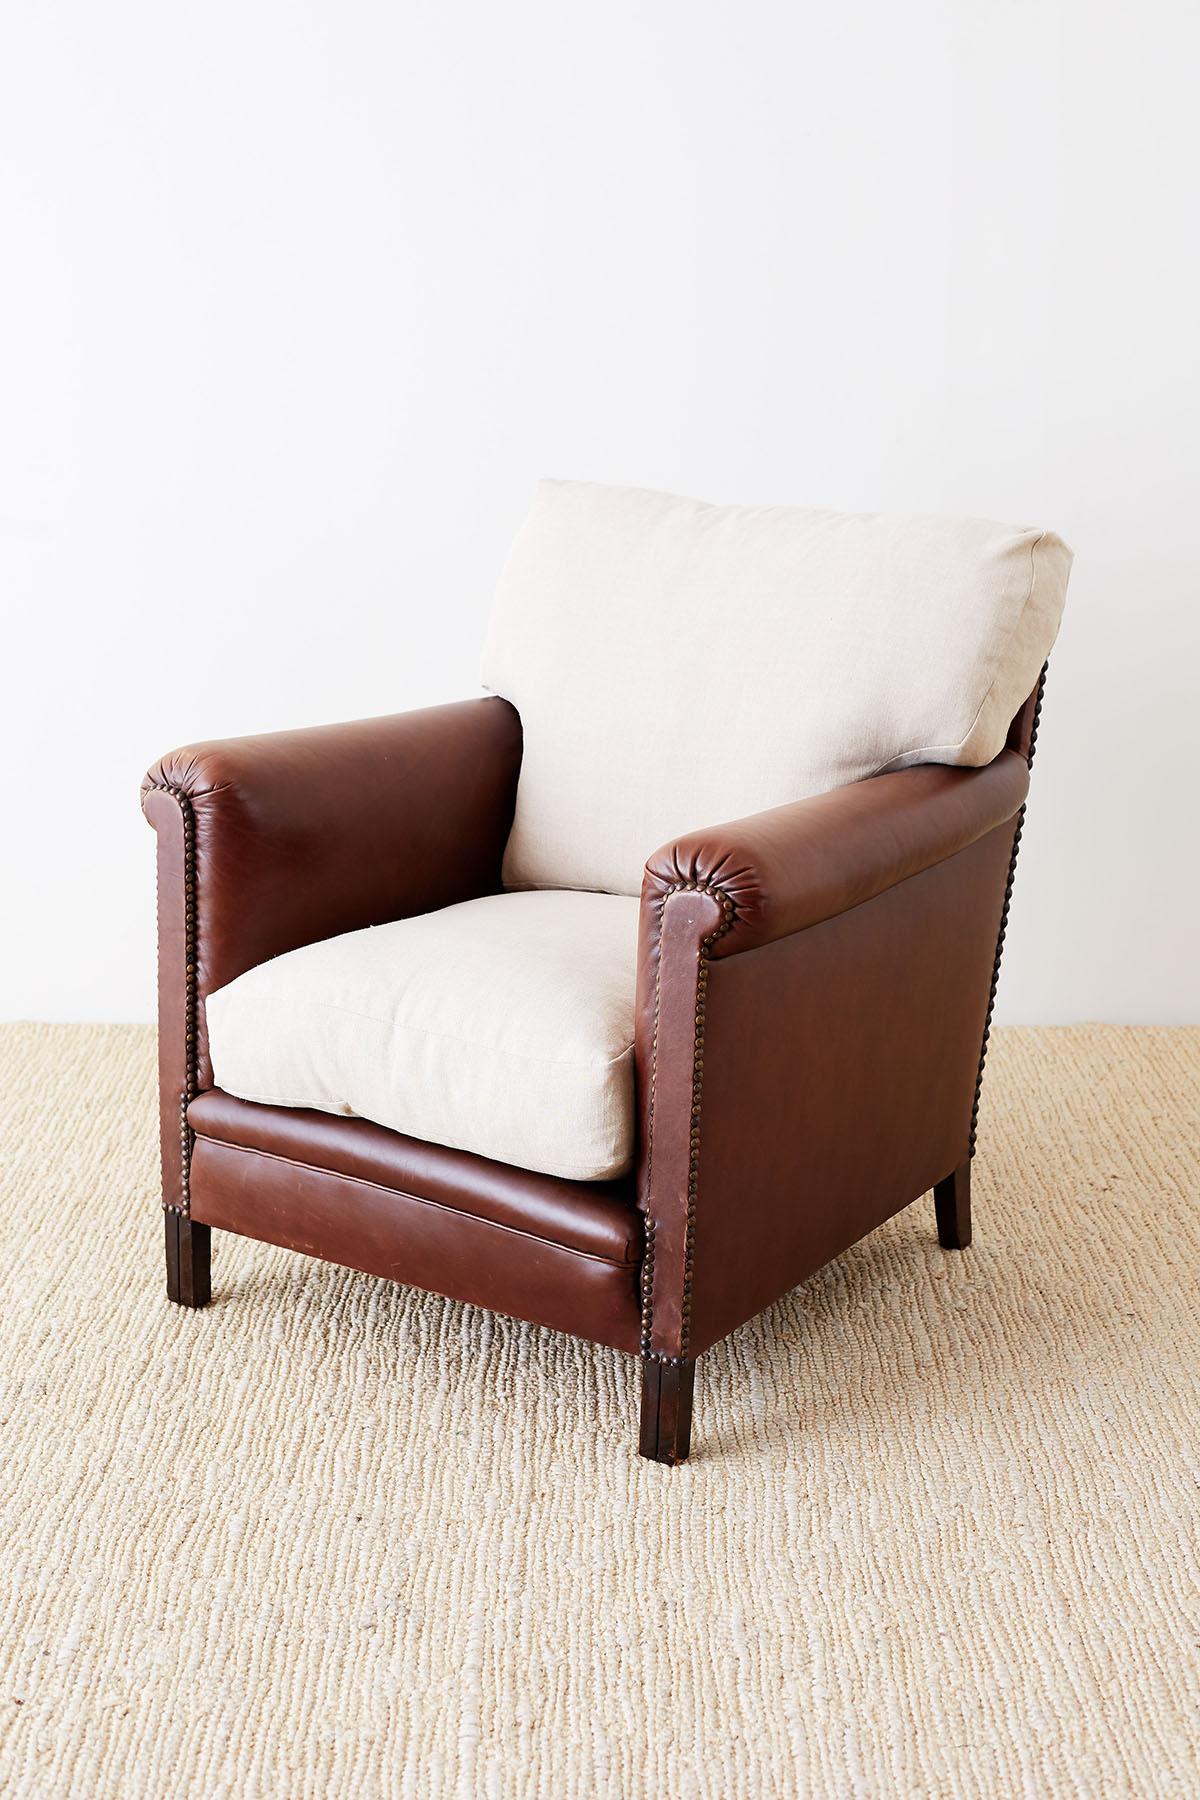 Fauteuil club ou fauteuil de salon en cuir américain du XXe siècle, réalisé dans le style Art déco. Le fauteuil présente une assise profonde avec des accoudoirs plats et droits subtilement roulés sur le dessus. L'assise généreuse est dotée de